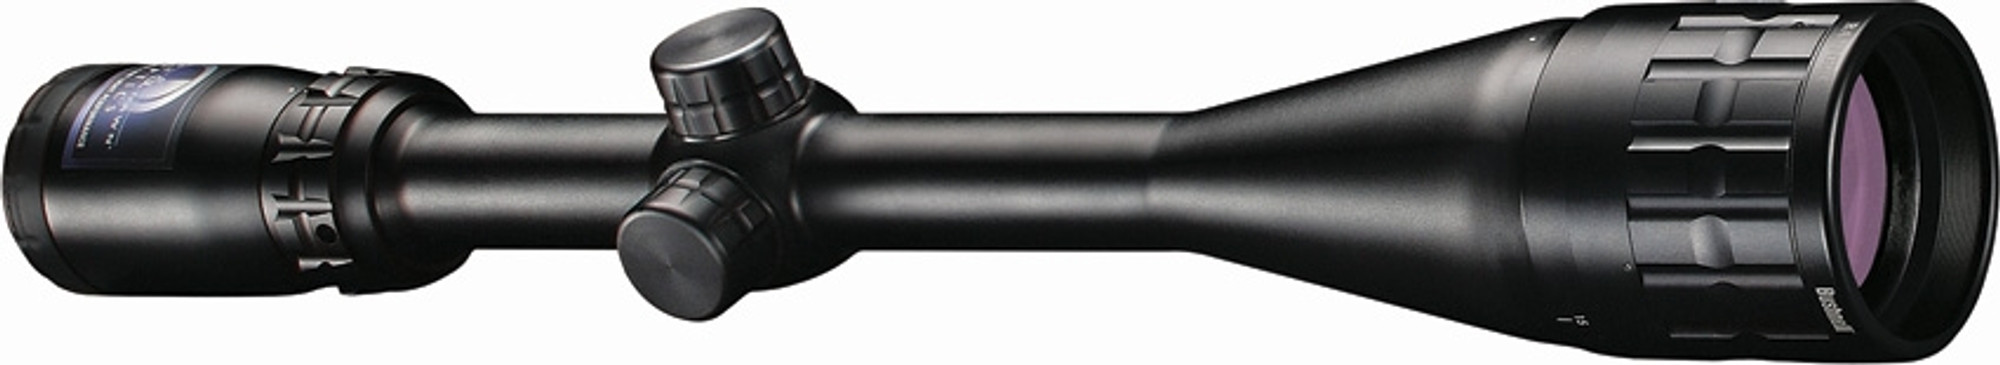 6-18x50mm Multi-X Scope